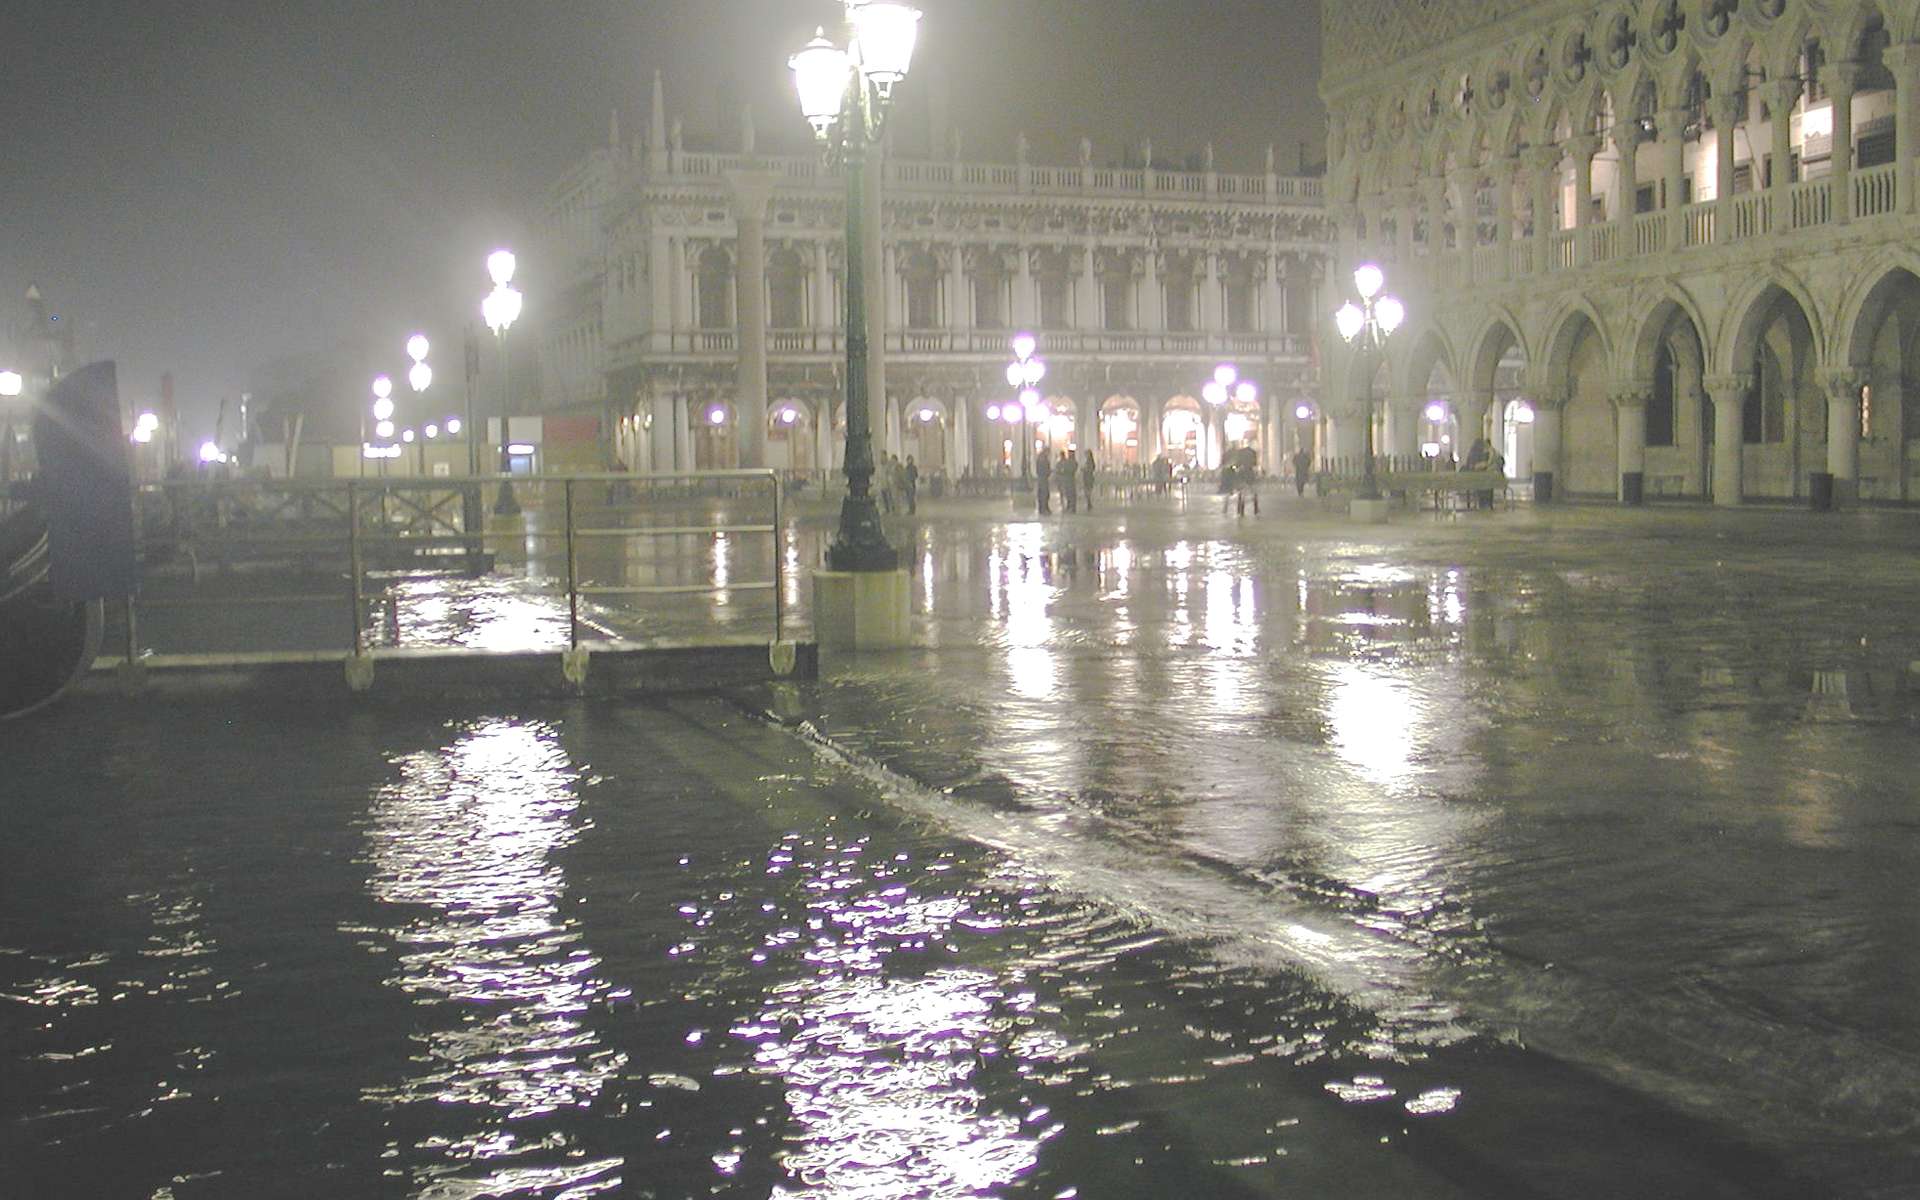 Depuis 2000, Venise a connu cinq acqua alta. La ville devrait être moins inondée à partir de 2014, car une projet de construction de digue est en cours. © Paolo da Reggio, DP